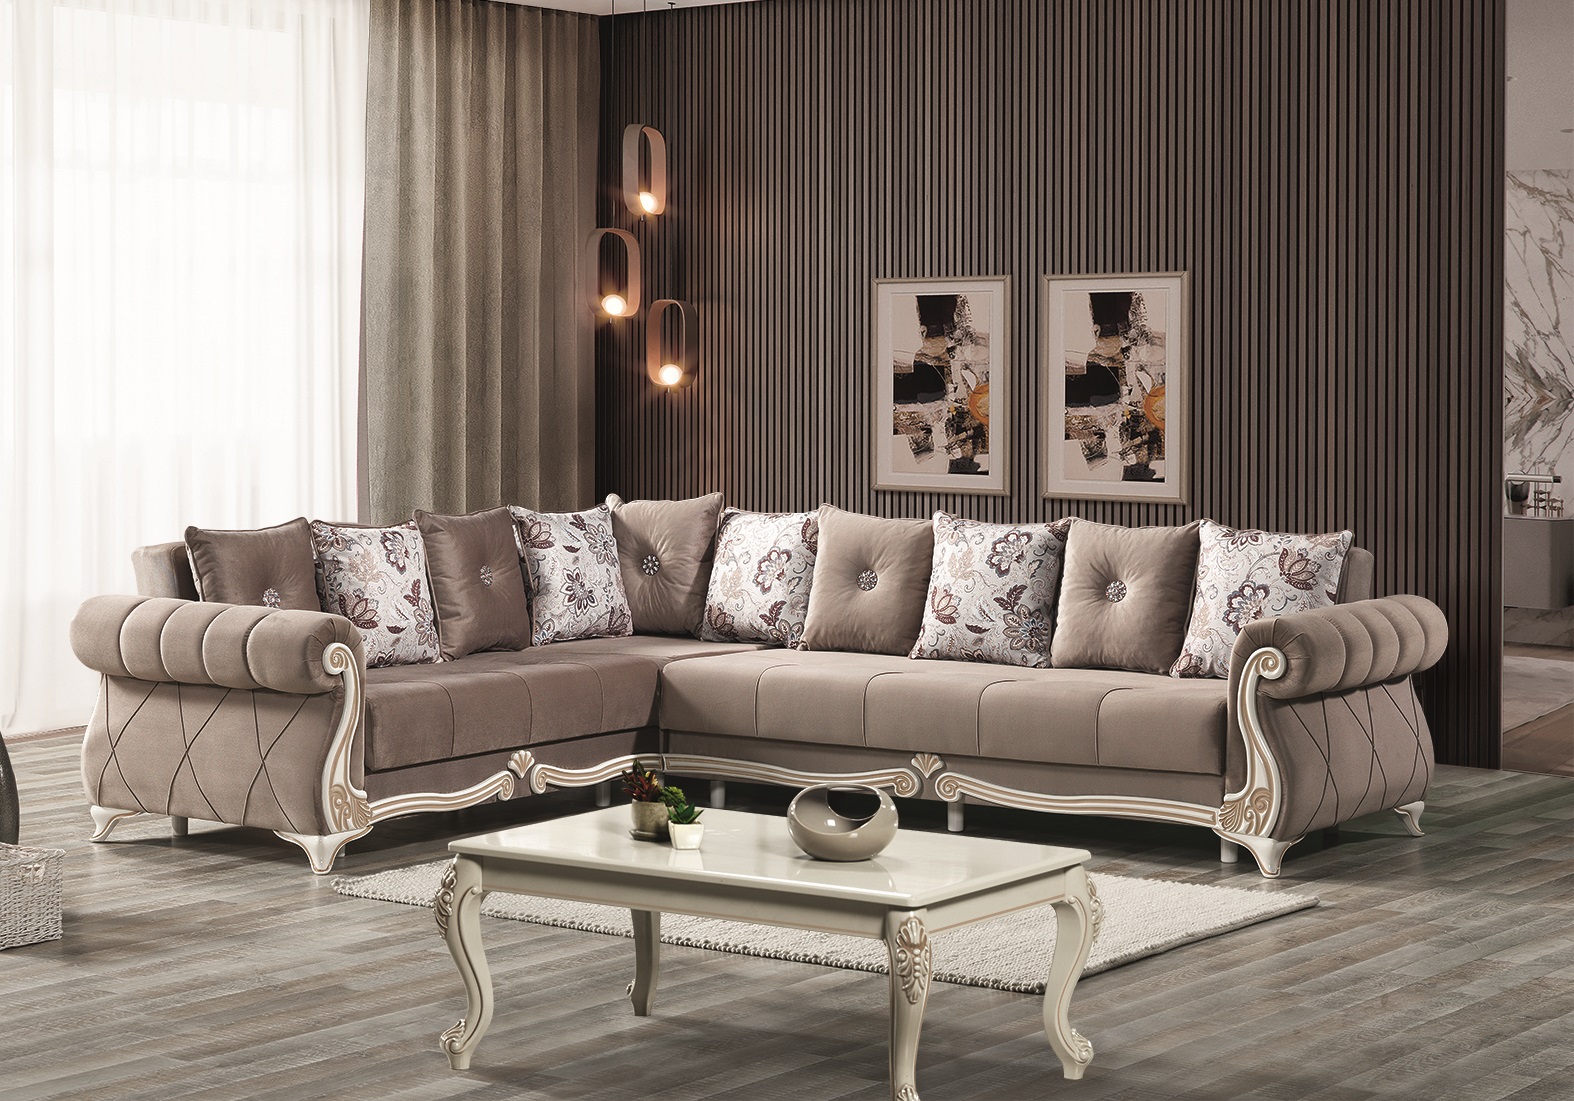 5 raisons pour lesquelles les meubles turcs sont un excellents choix pour  votre décoration intérieure - Meubles turcs - decomeuble.fr